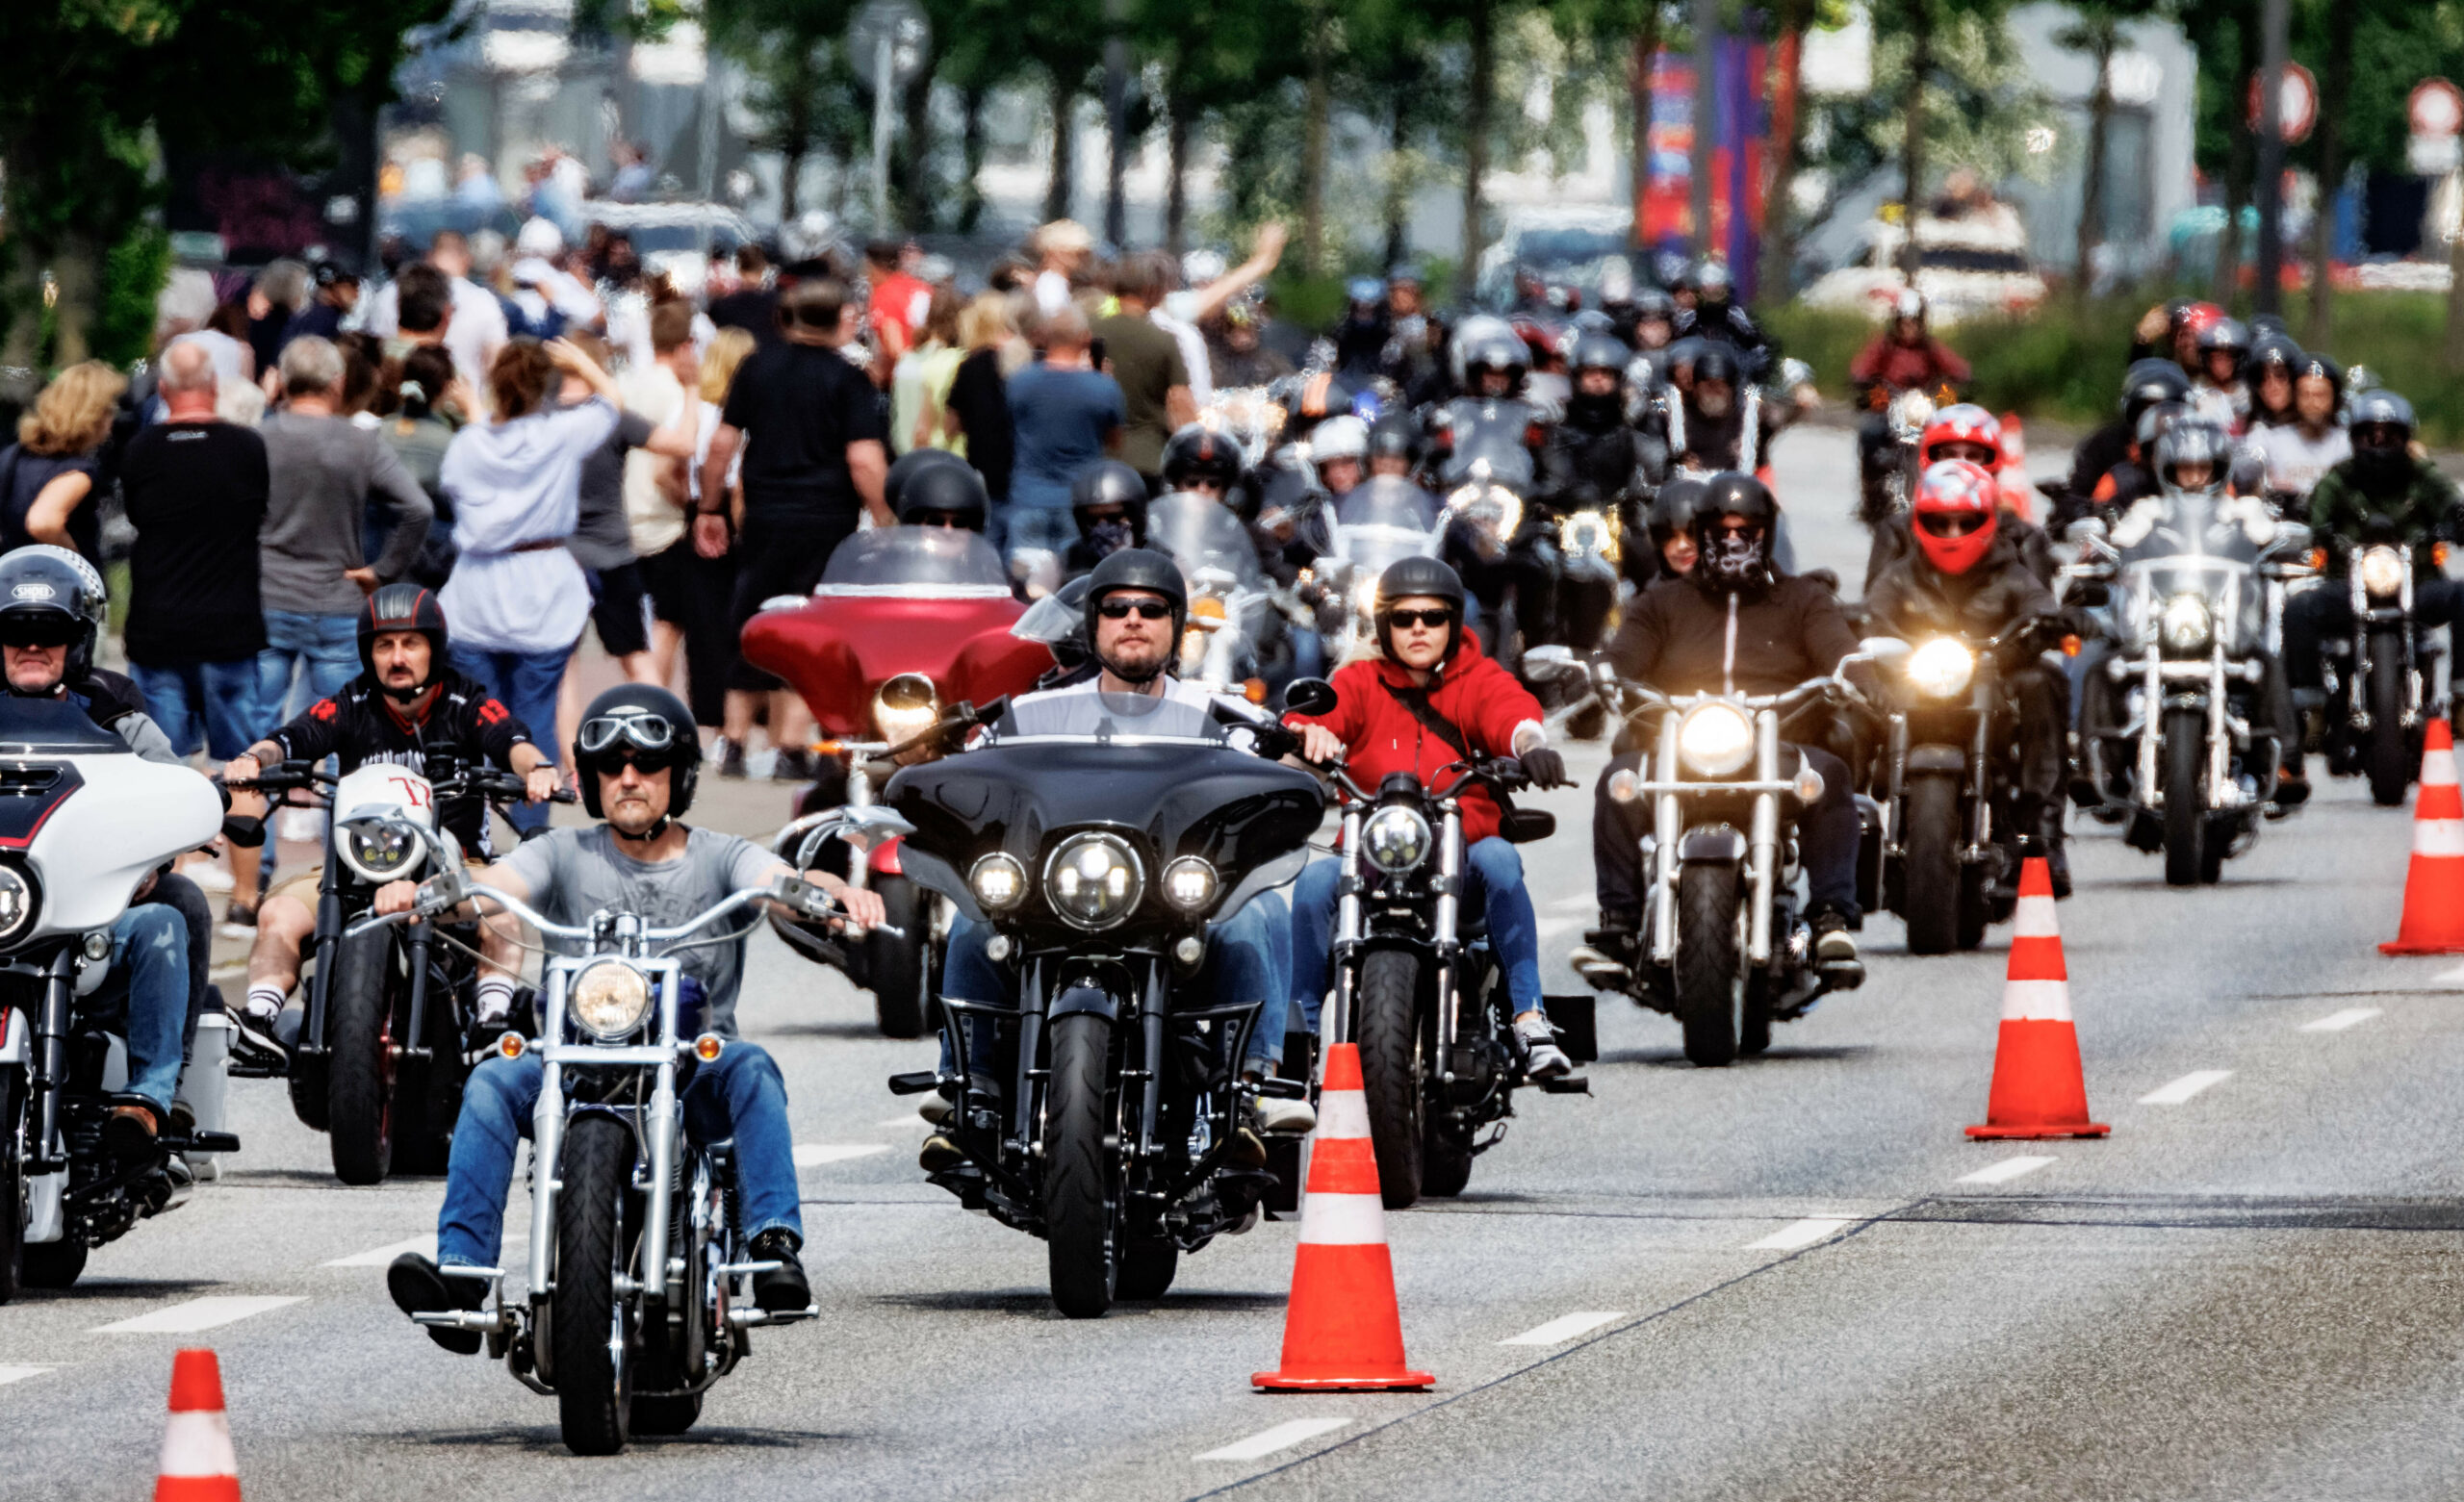 Teilnehmer der Hamburg Harley Days, Europas größtes innerstädtisches Biker-Treffen, fahren zum Abschluss der Veranstaltung in einem Korso durch die Stadt.